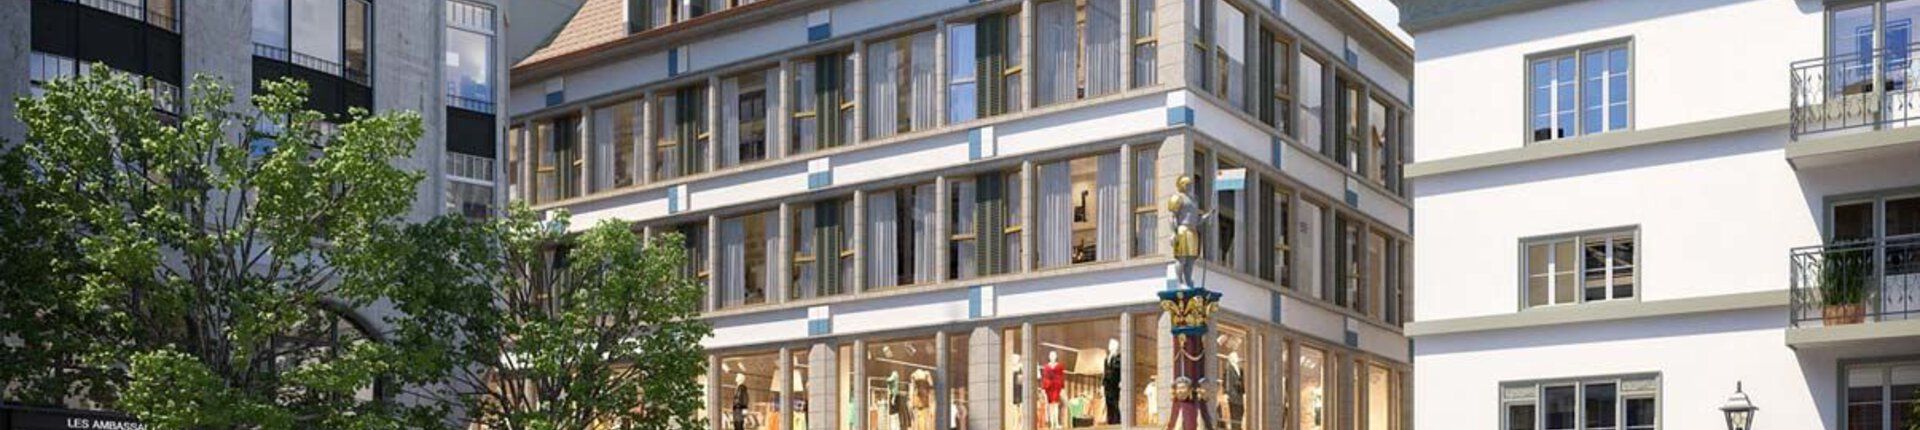 Einkaufszentrum Kapellgasse Luzern